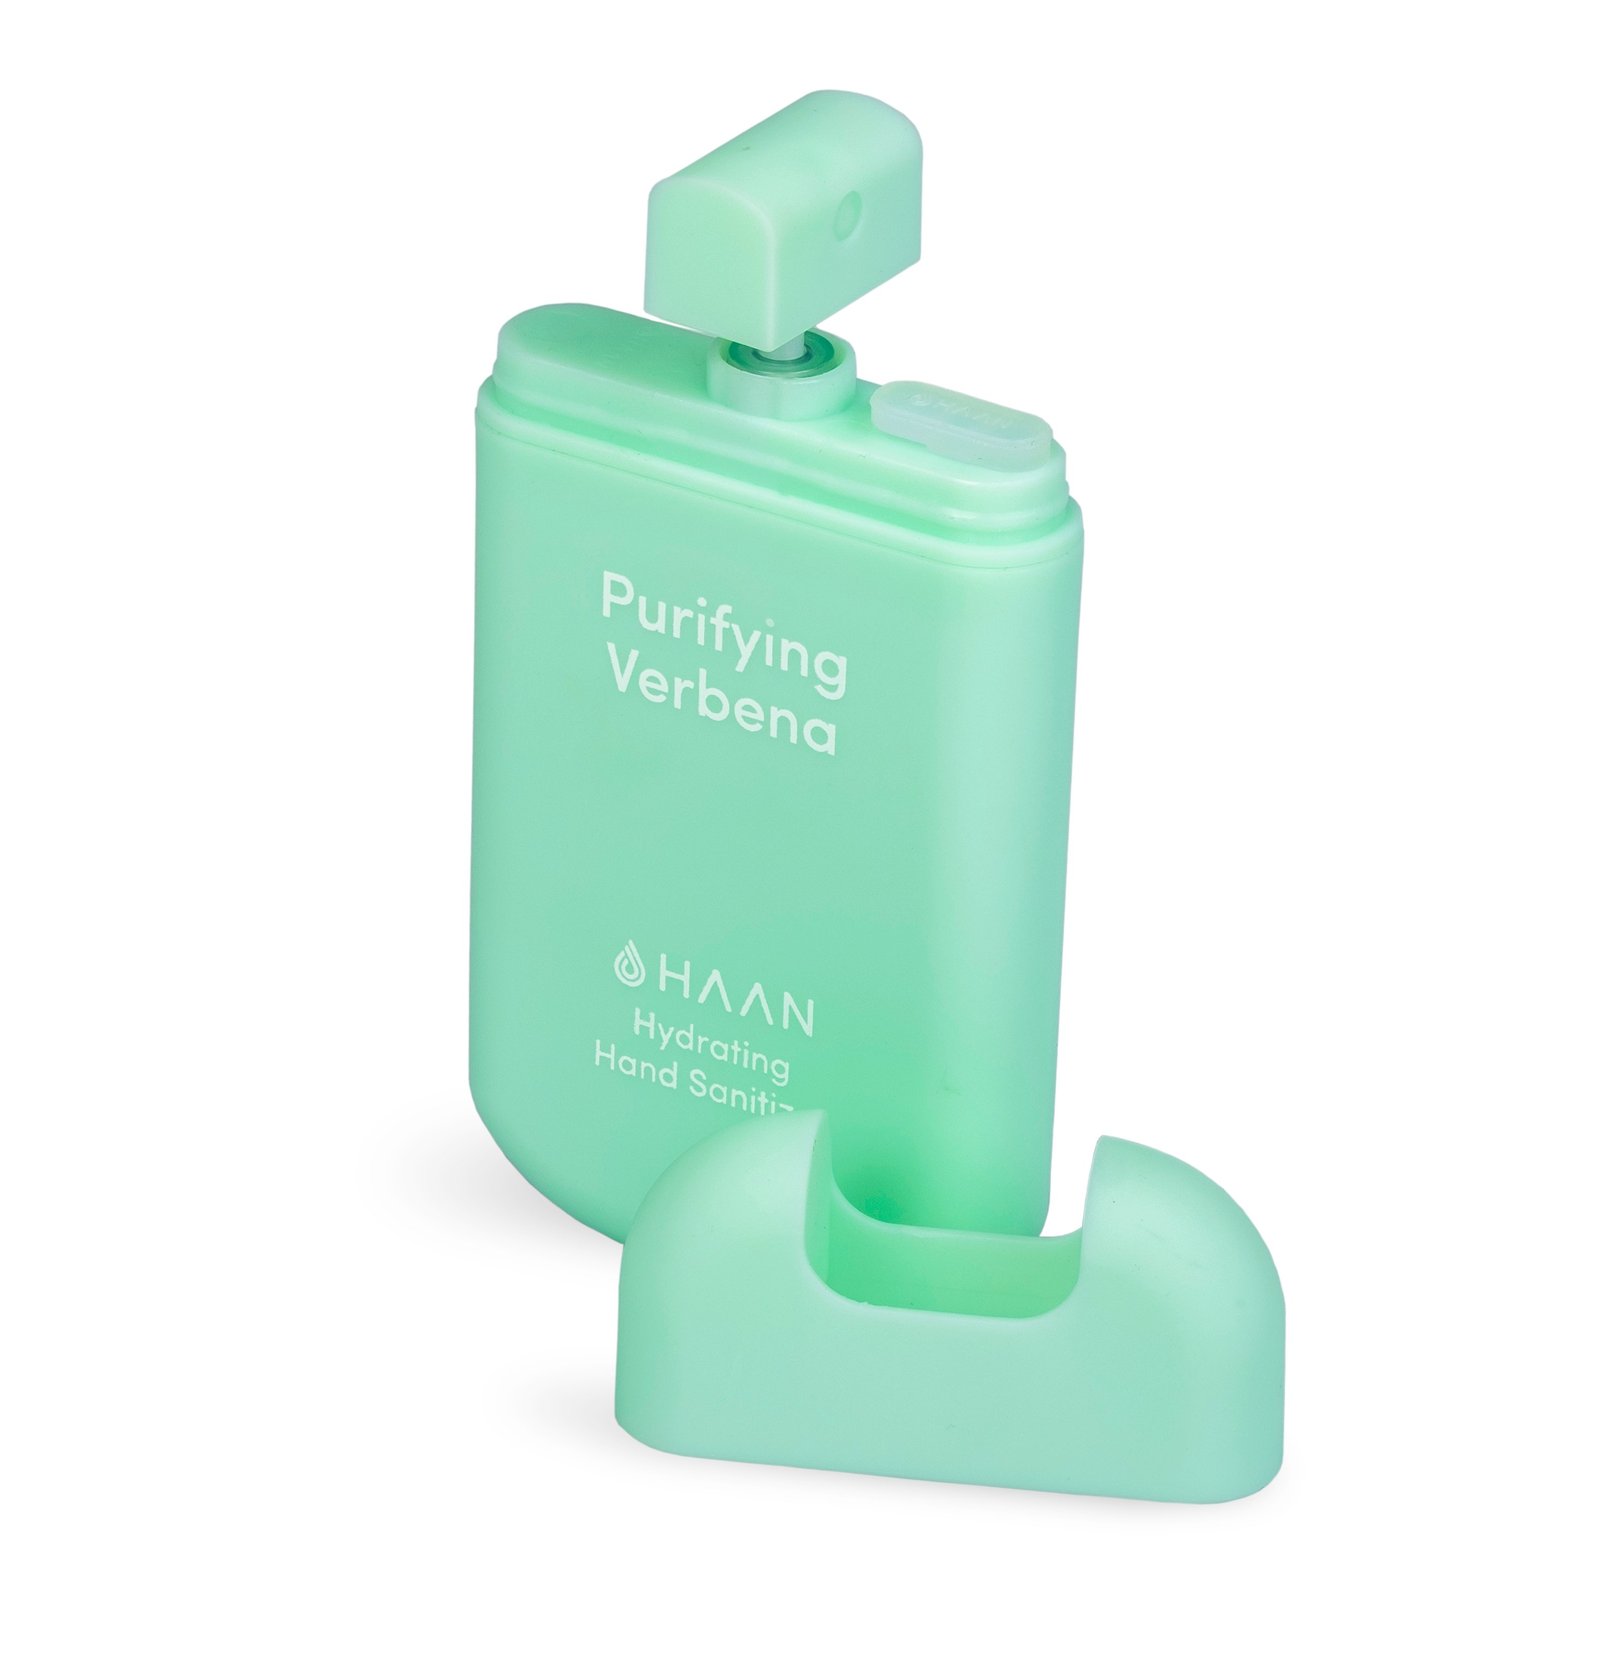 HAAN Purifying Verbena Pocket Hand Sanitizer 30 ml